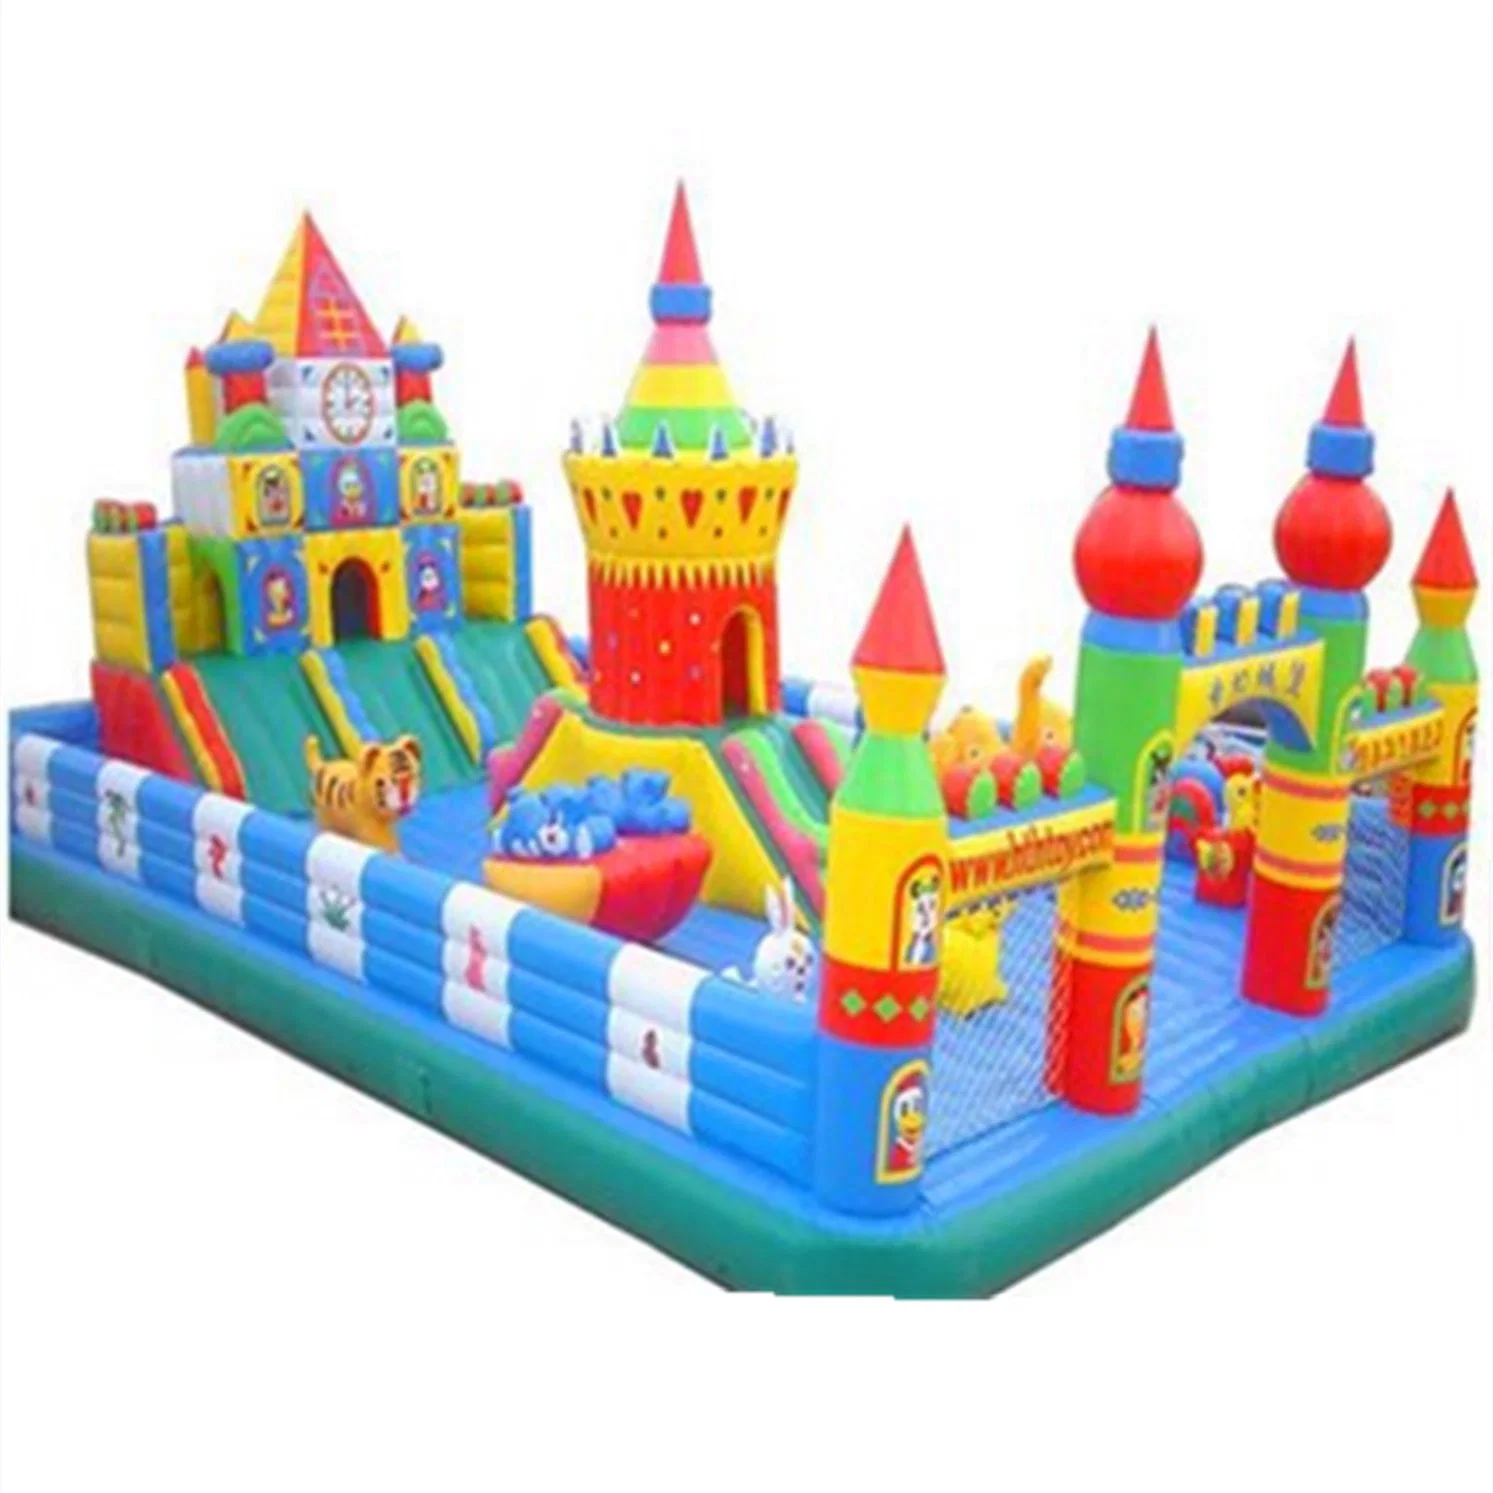 Los niños al aire libre del parque de diversiones de castillo inflable juguete diapositiva equipos 44CB